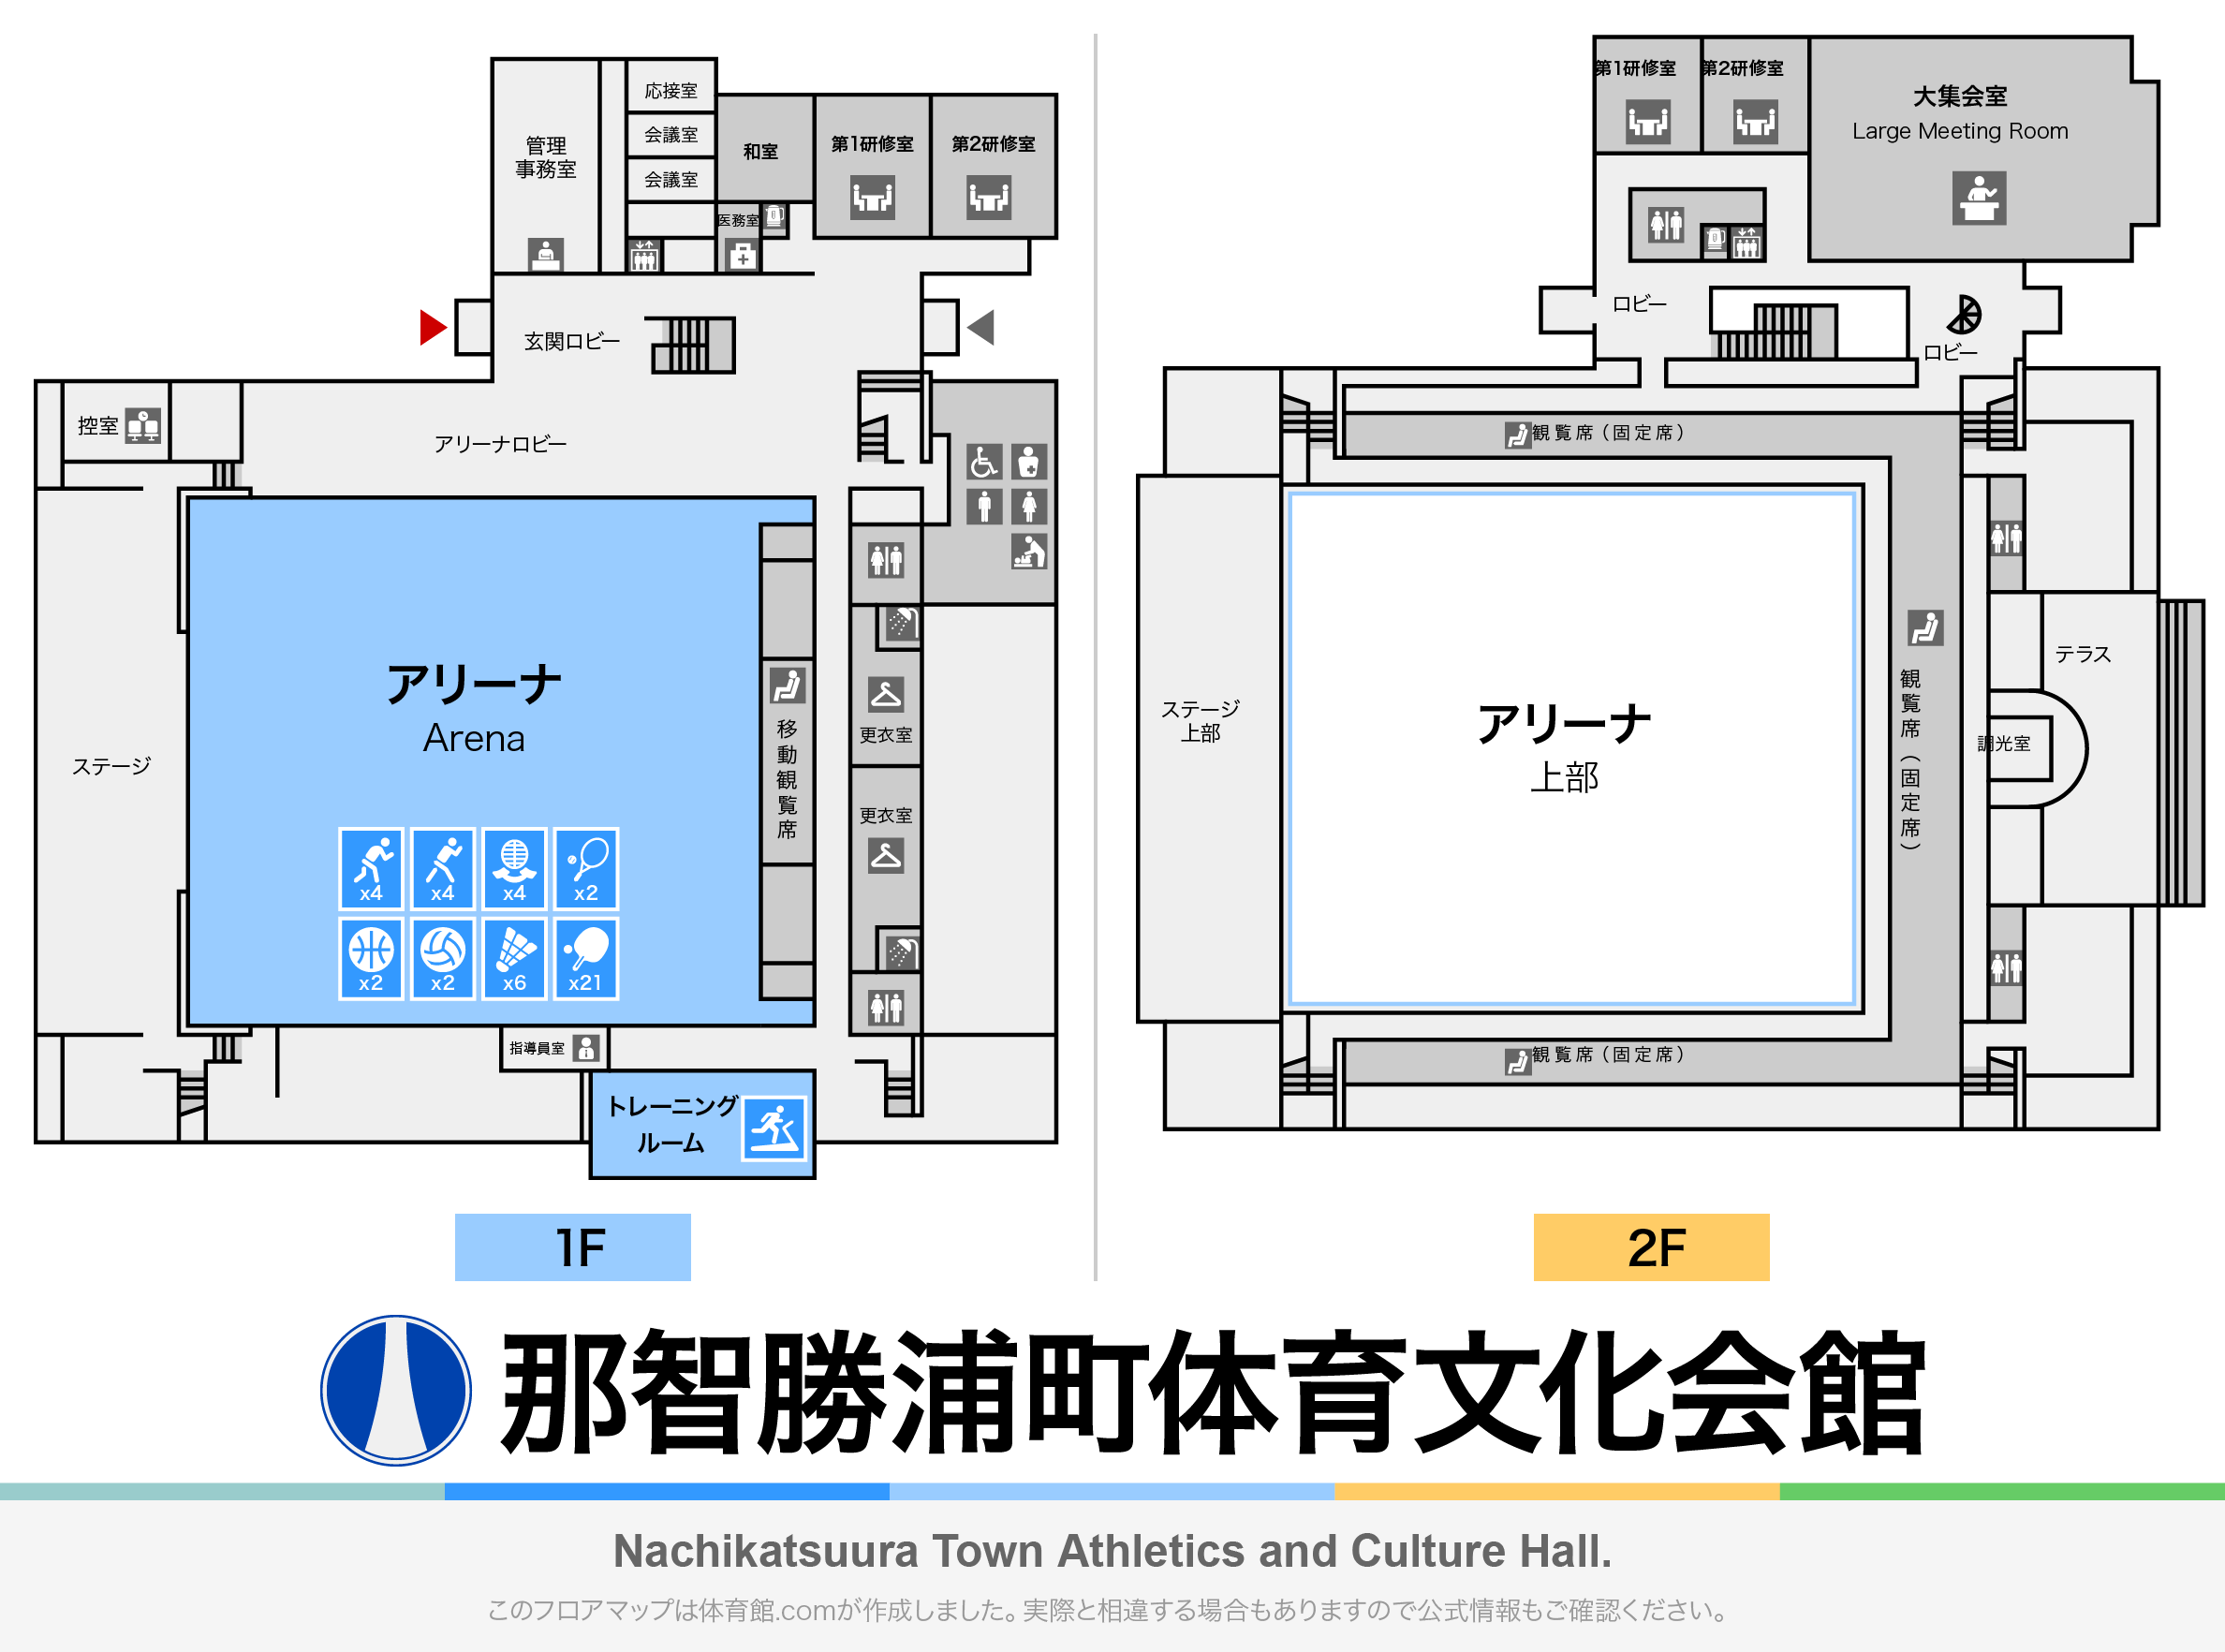 那智勝浦町体育文化会館のフロアマップ